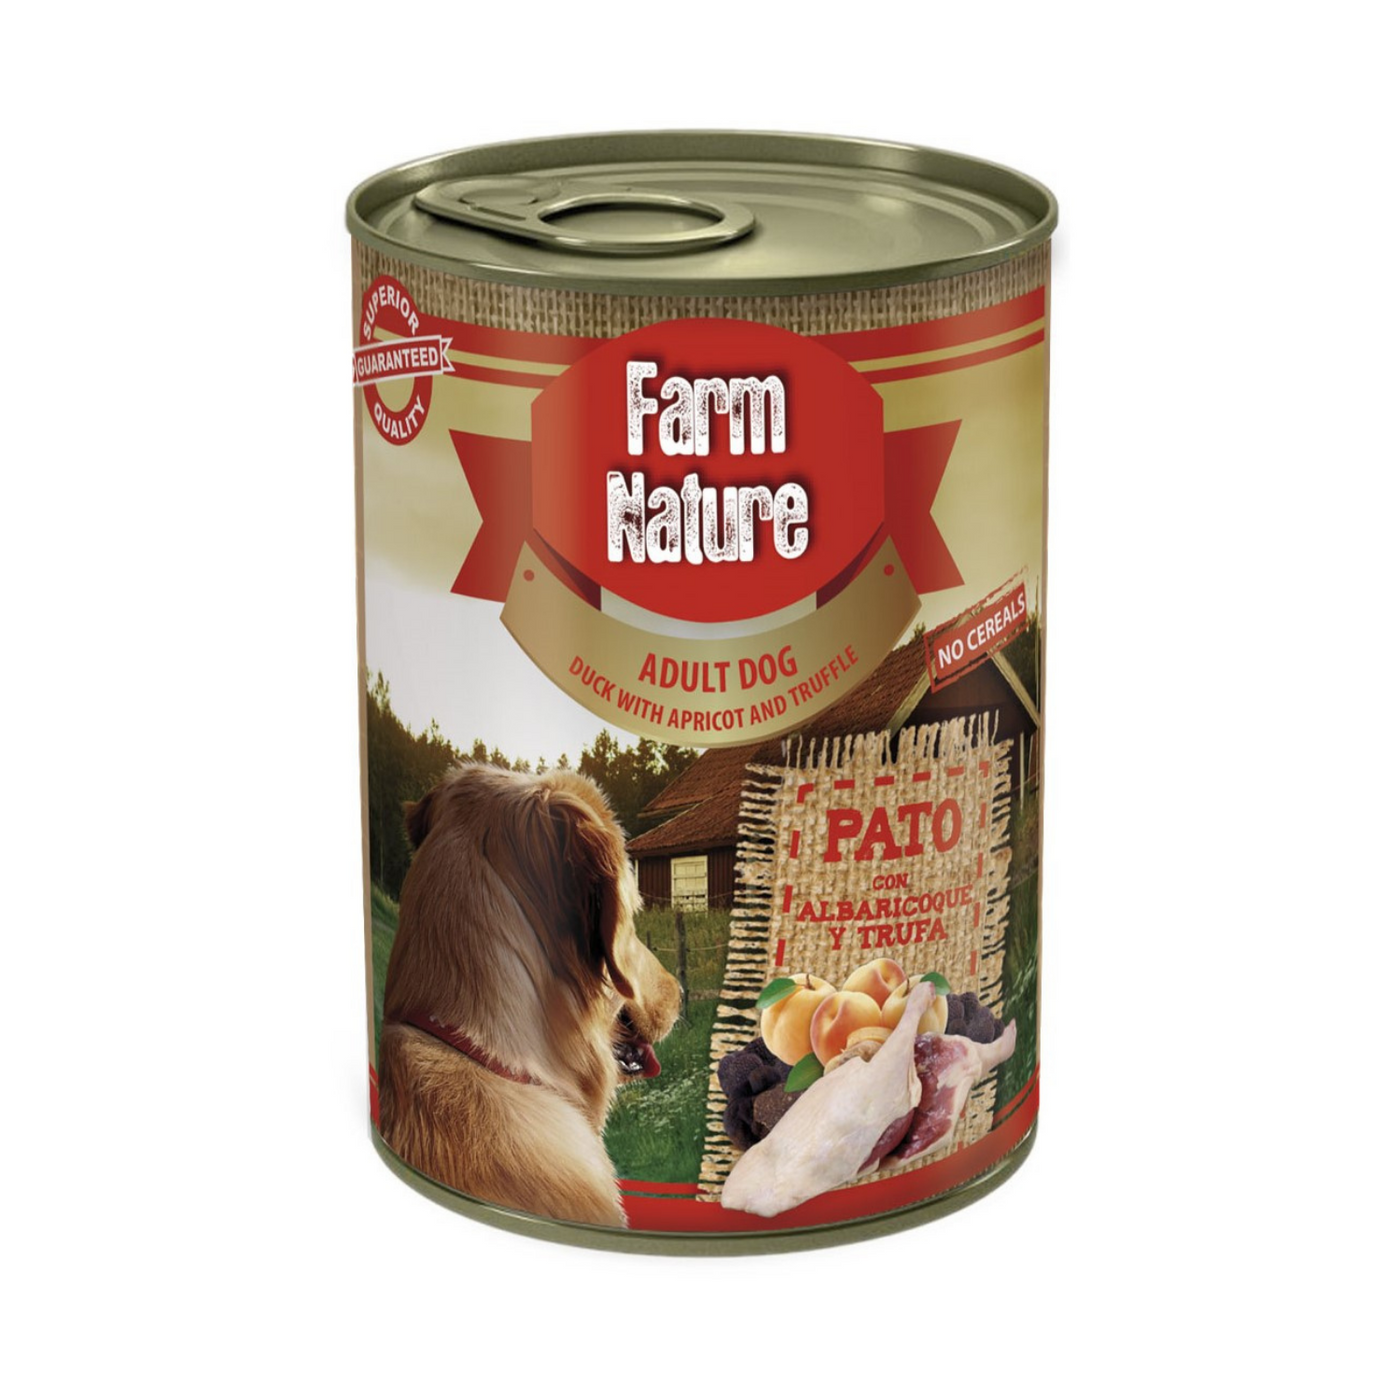 Farm Nature Pato con Albaricoque y Trufa